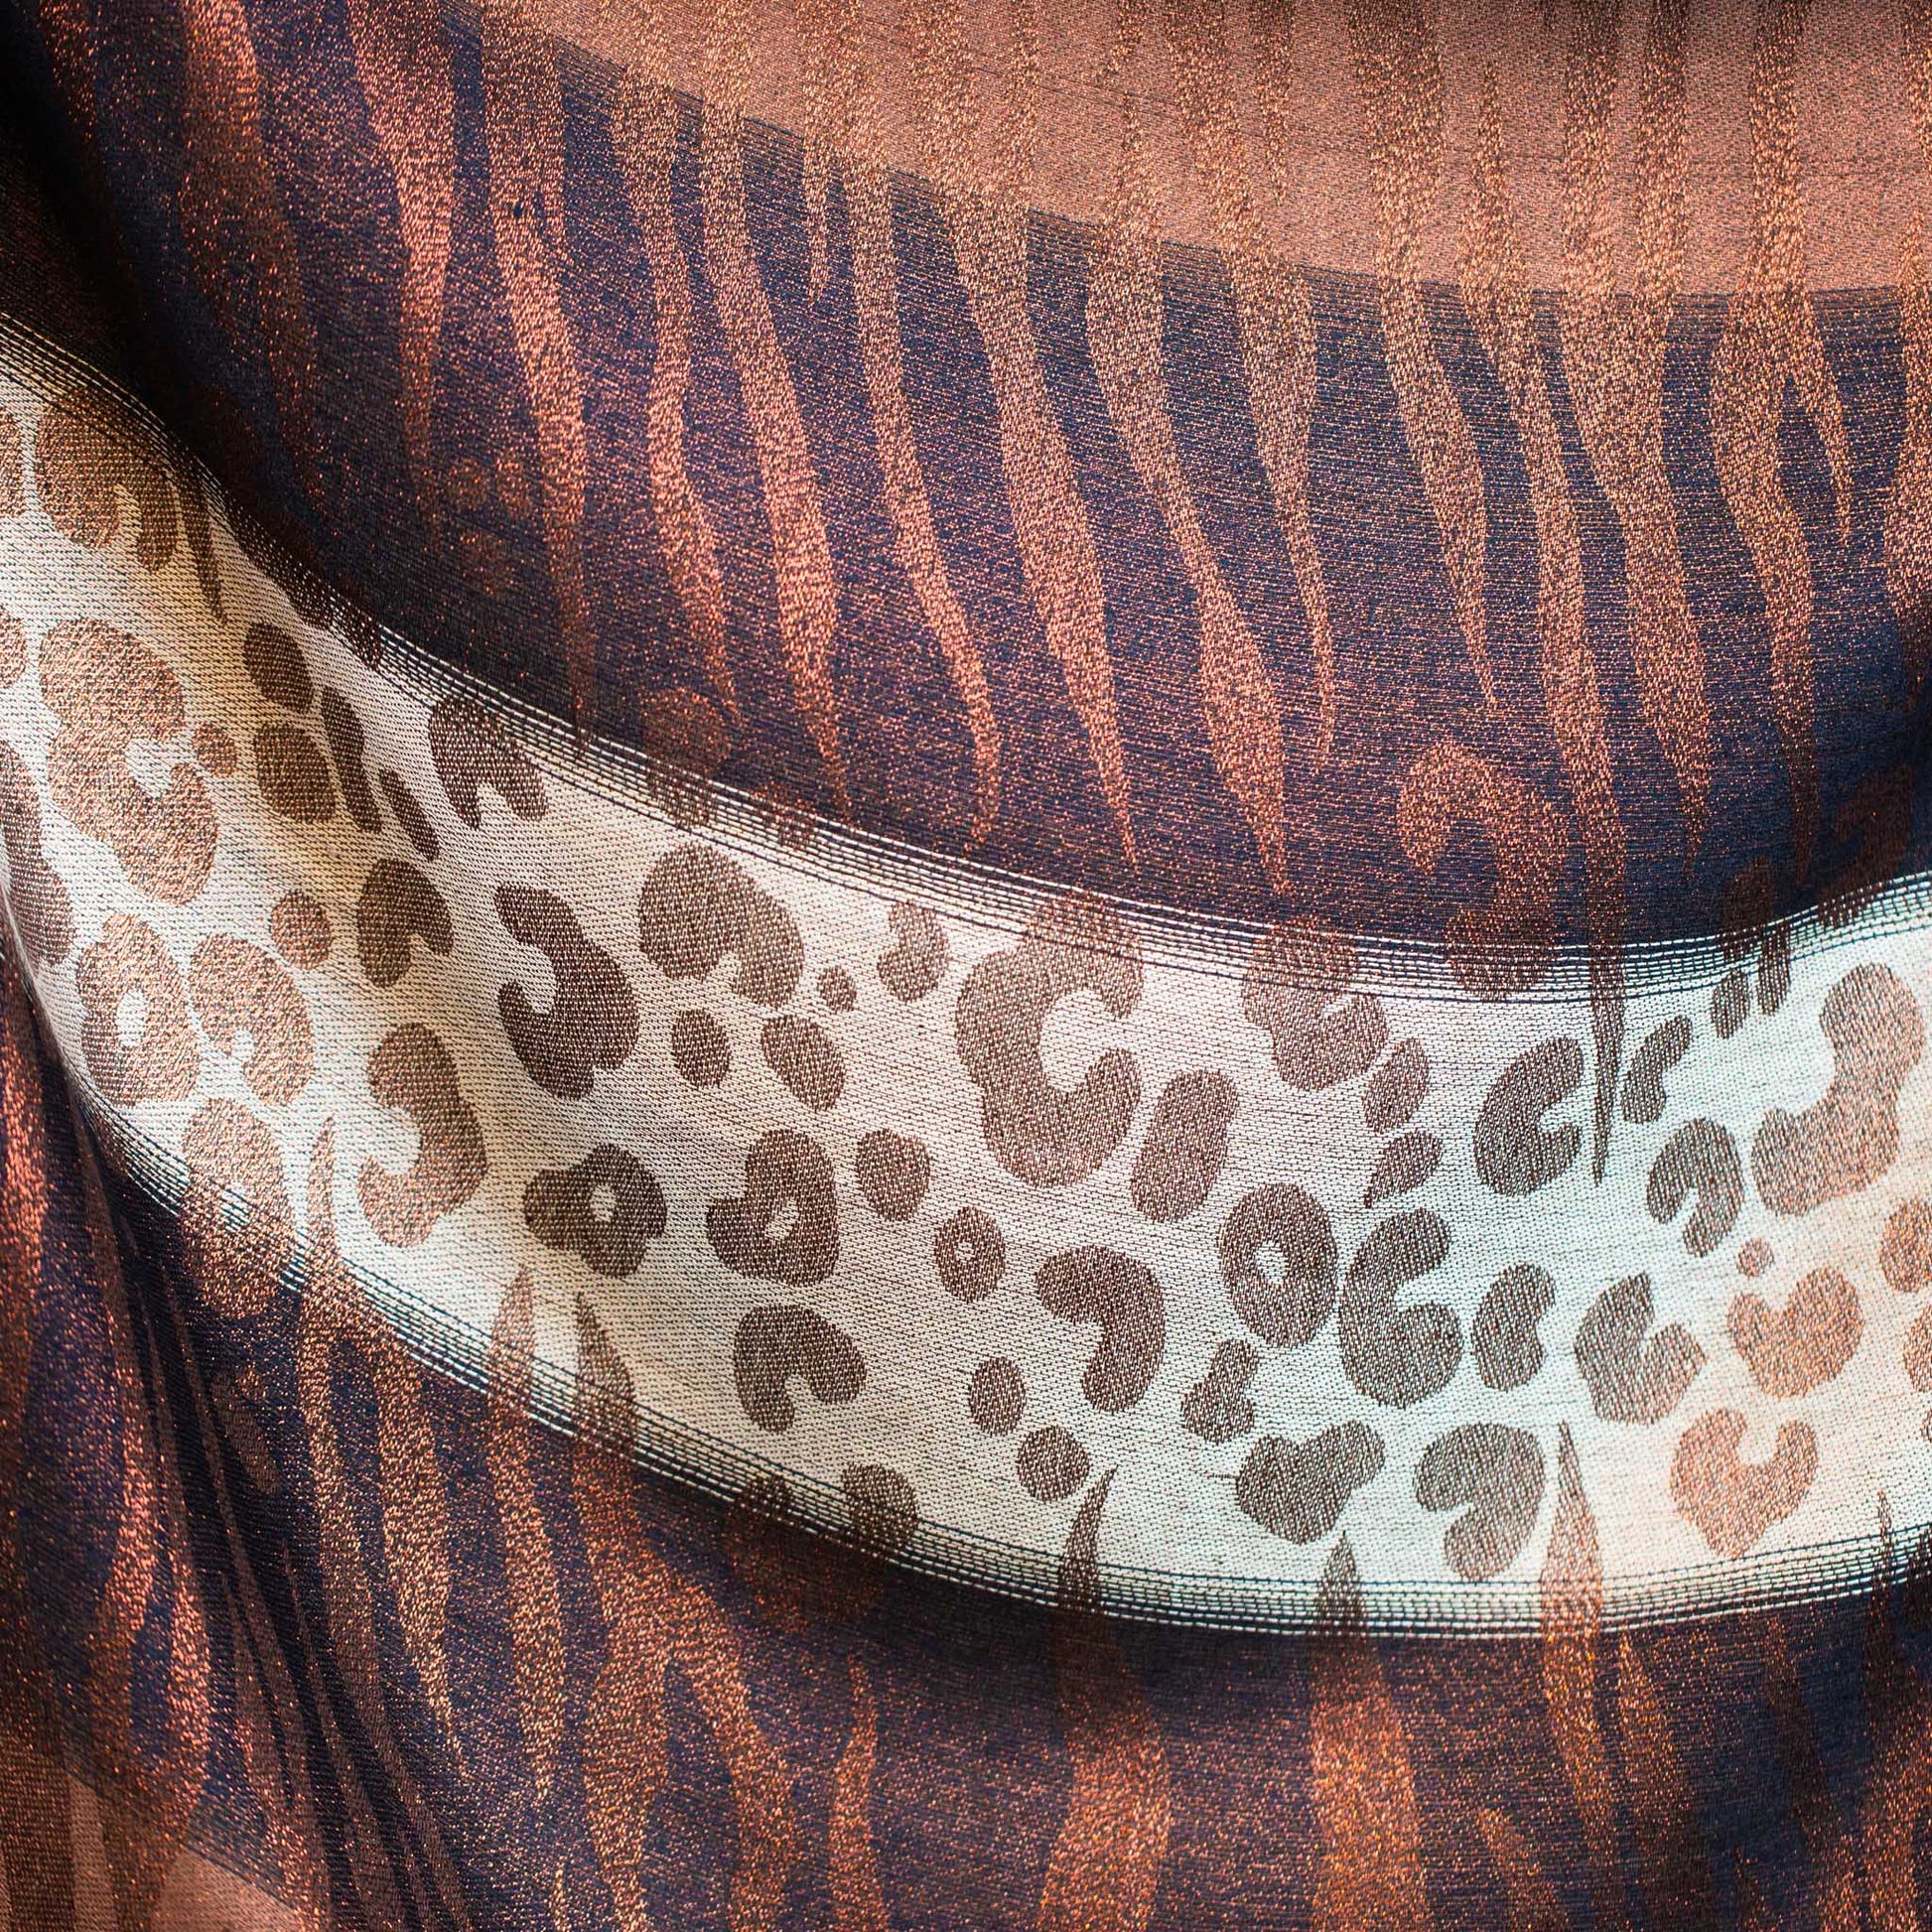 Eșarfă damă cu animal print, fir sclipitor și franjuri, 180 x 70 cm - Maro, Bej, Arămiu